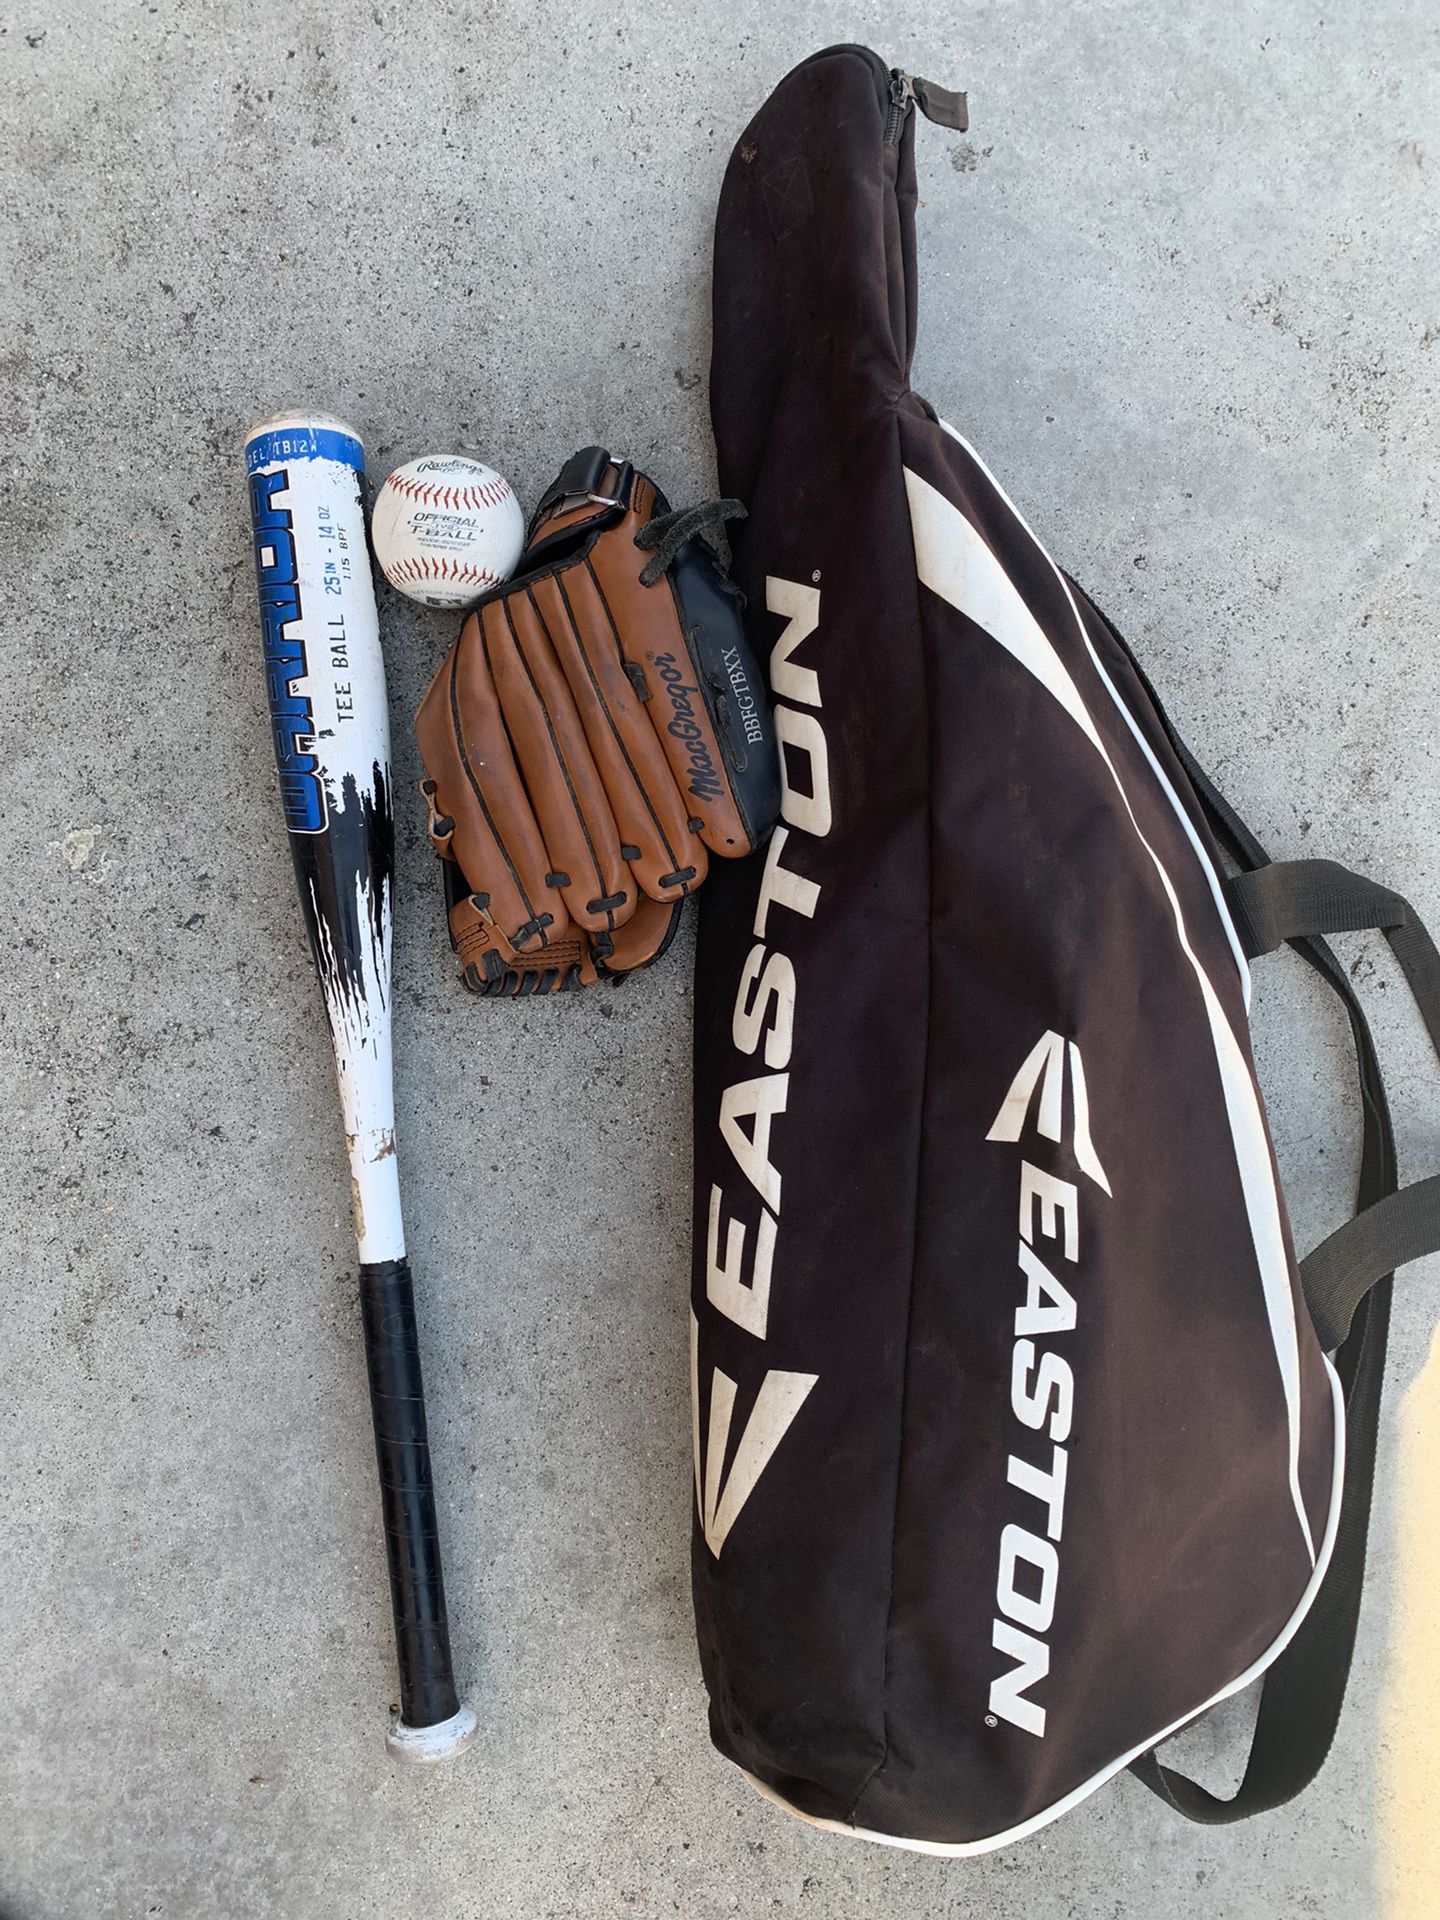 Tee ball Bat with glove, baseball and bag